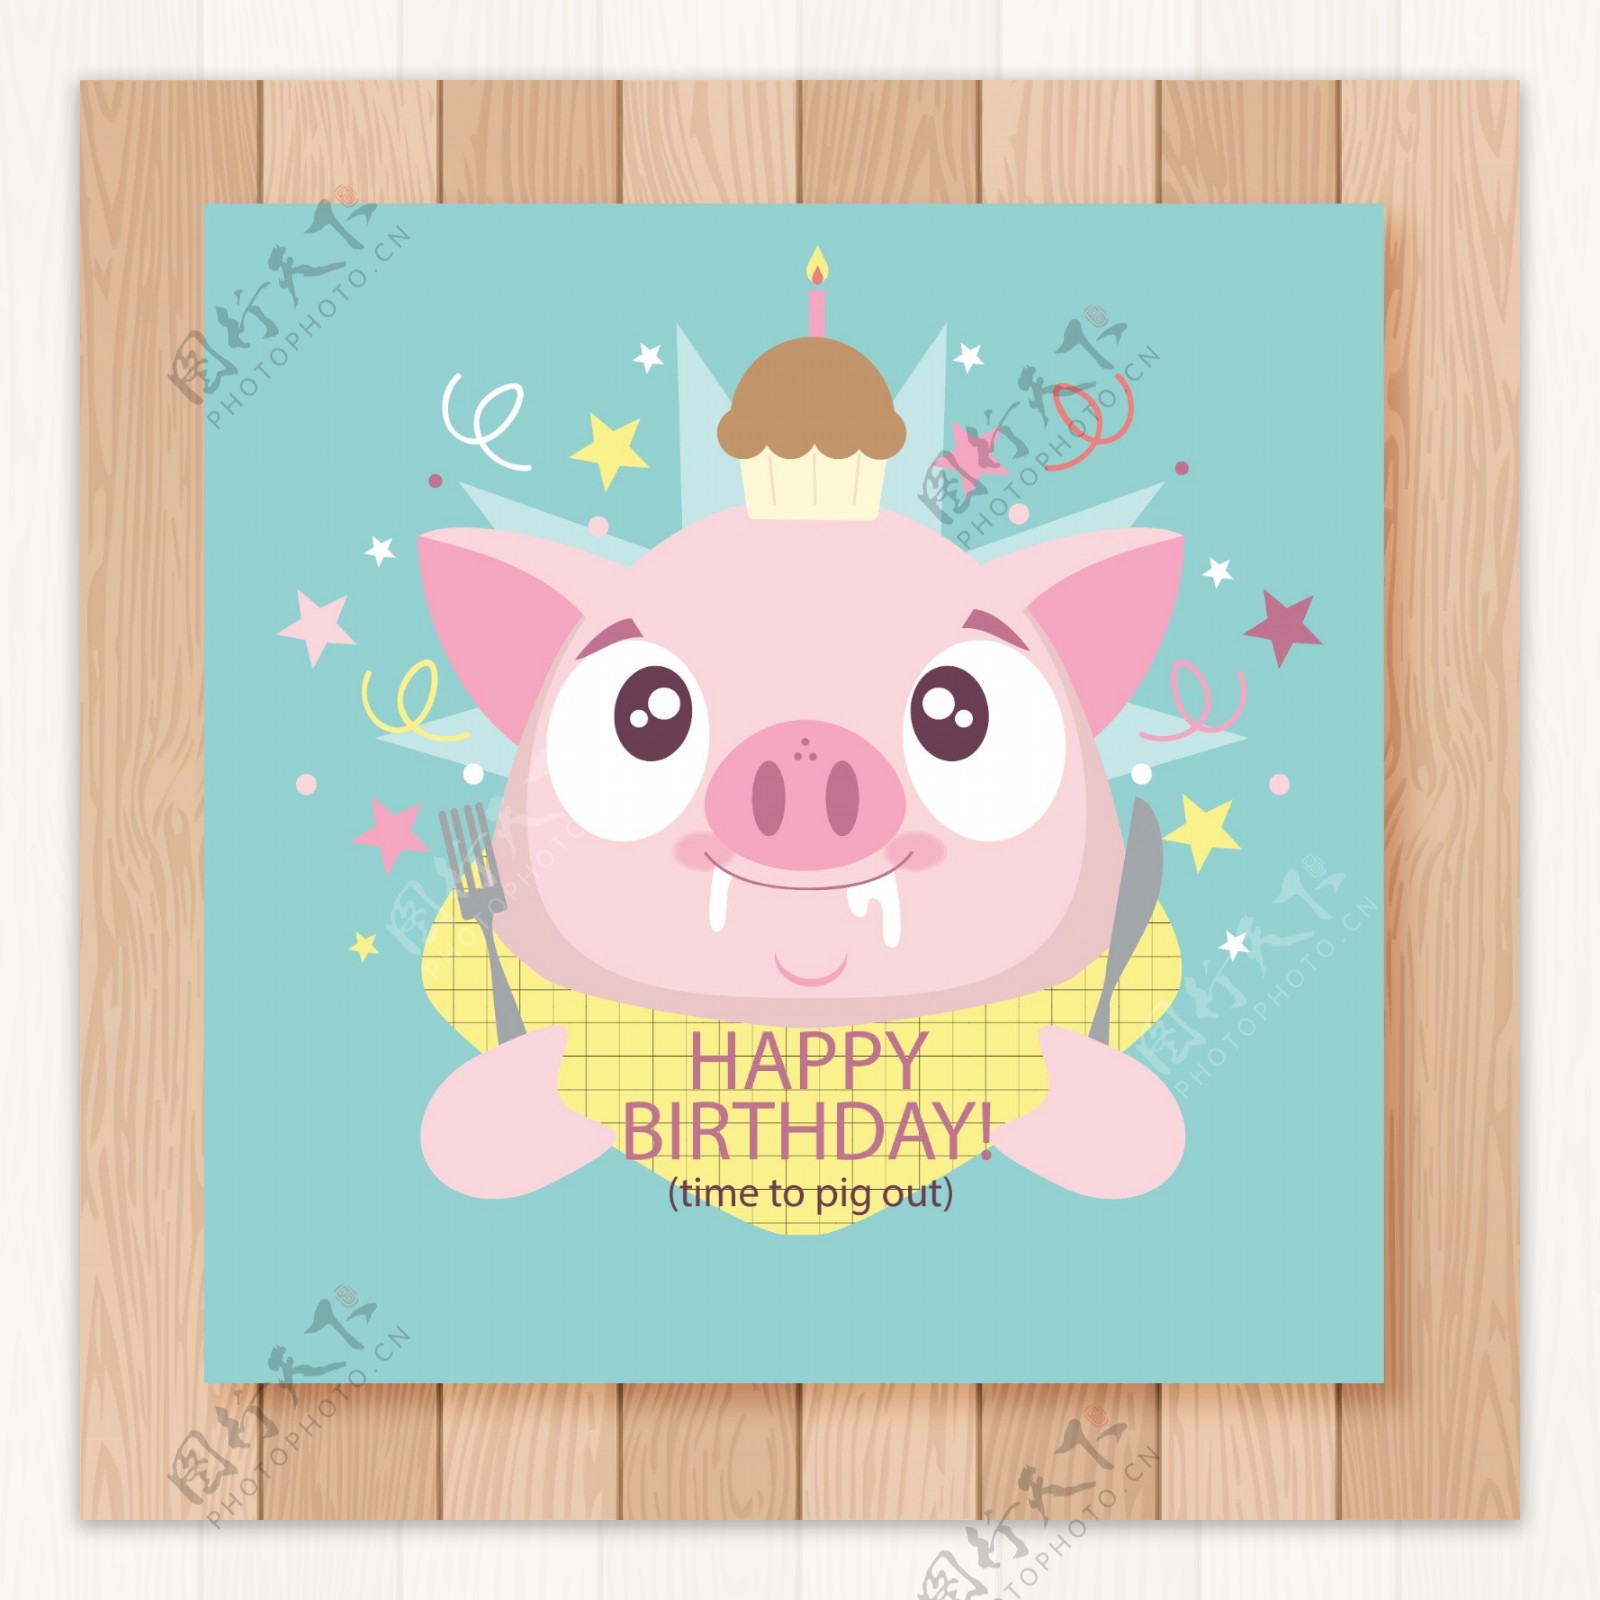 生日快乐与猪漫画人物的卡片模板 库存例证. 插画 包括有 婴孩, 生日, 符号, 背包, 庆祝, 问候 - 117559559